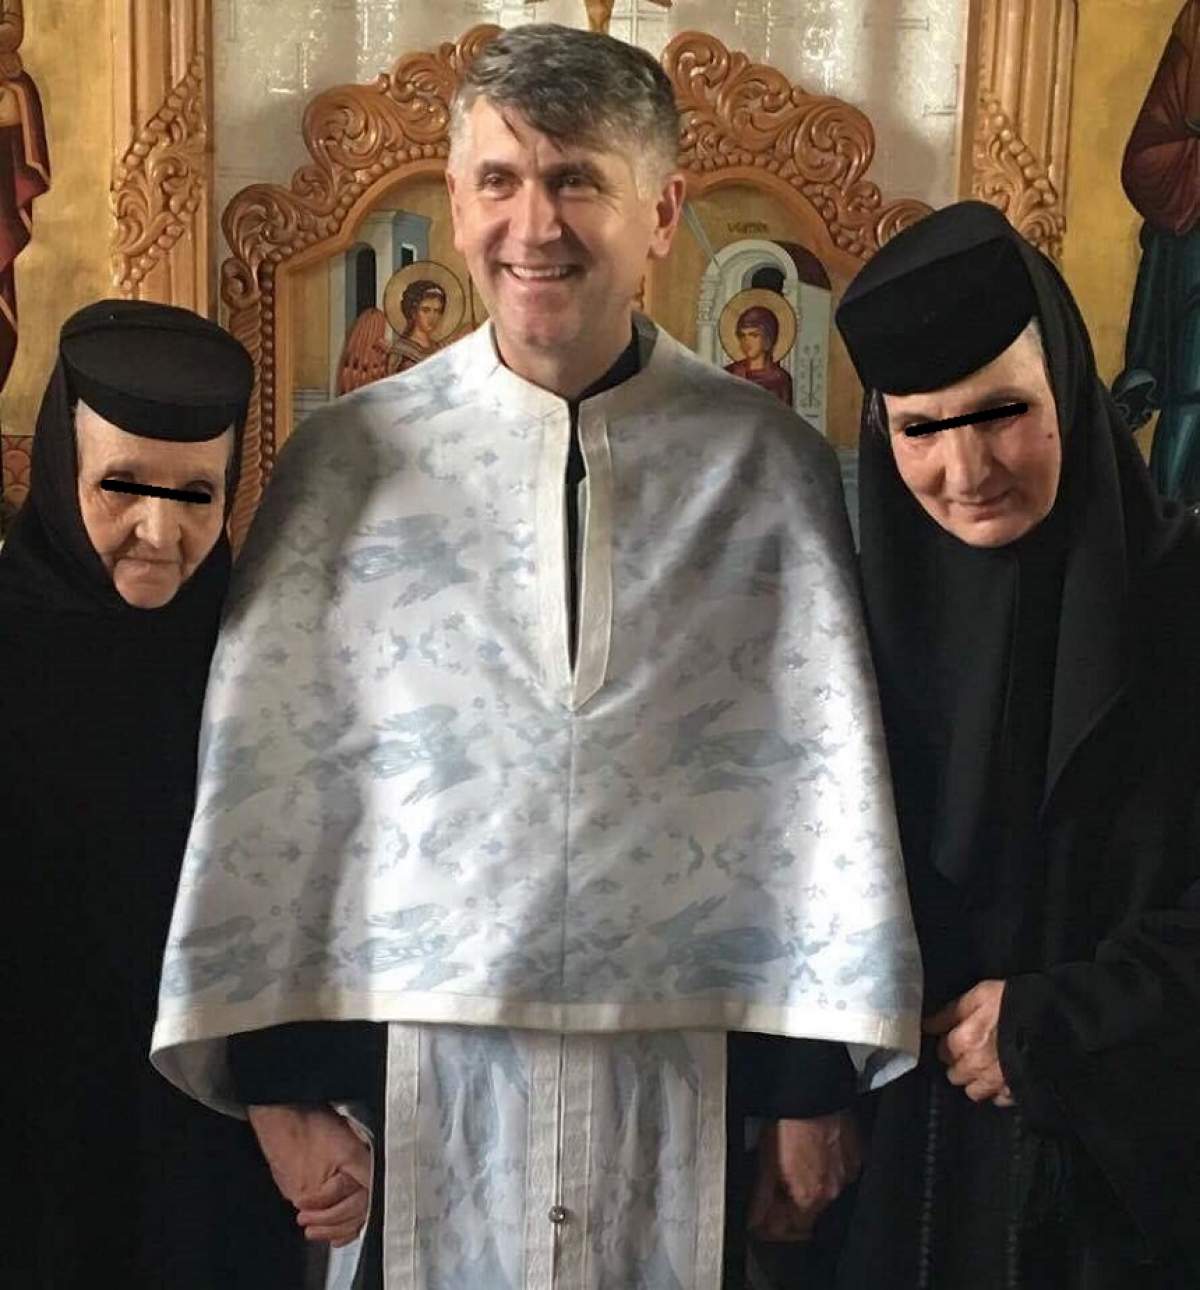 VIDEO / Noi acuzaţii grave îi sunt aduse preotului Pomohaci! Ce s-ar întâmpla în casa preotului: "E bisexual. Acolo femeile erau ca la turci"